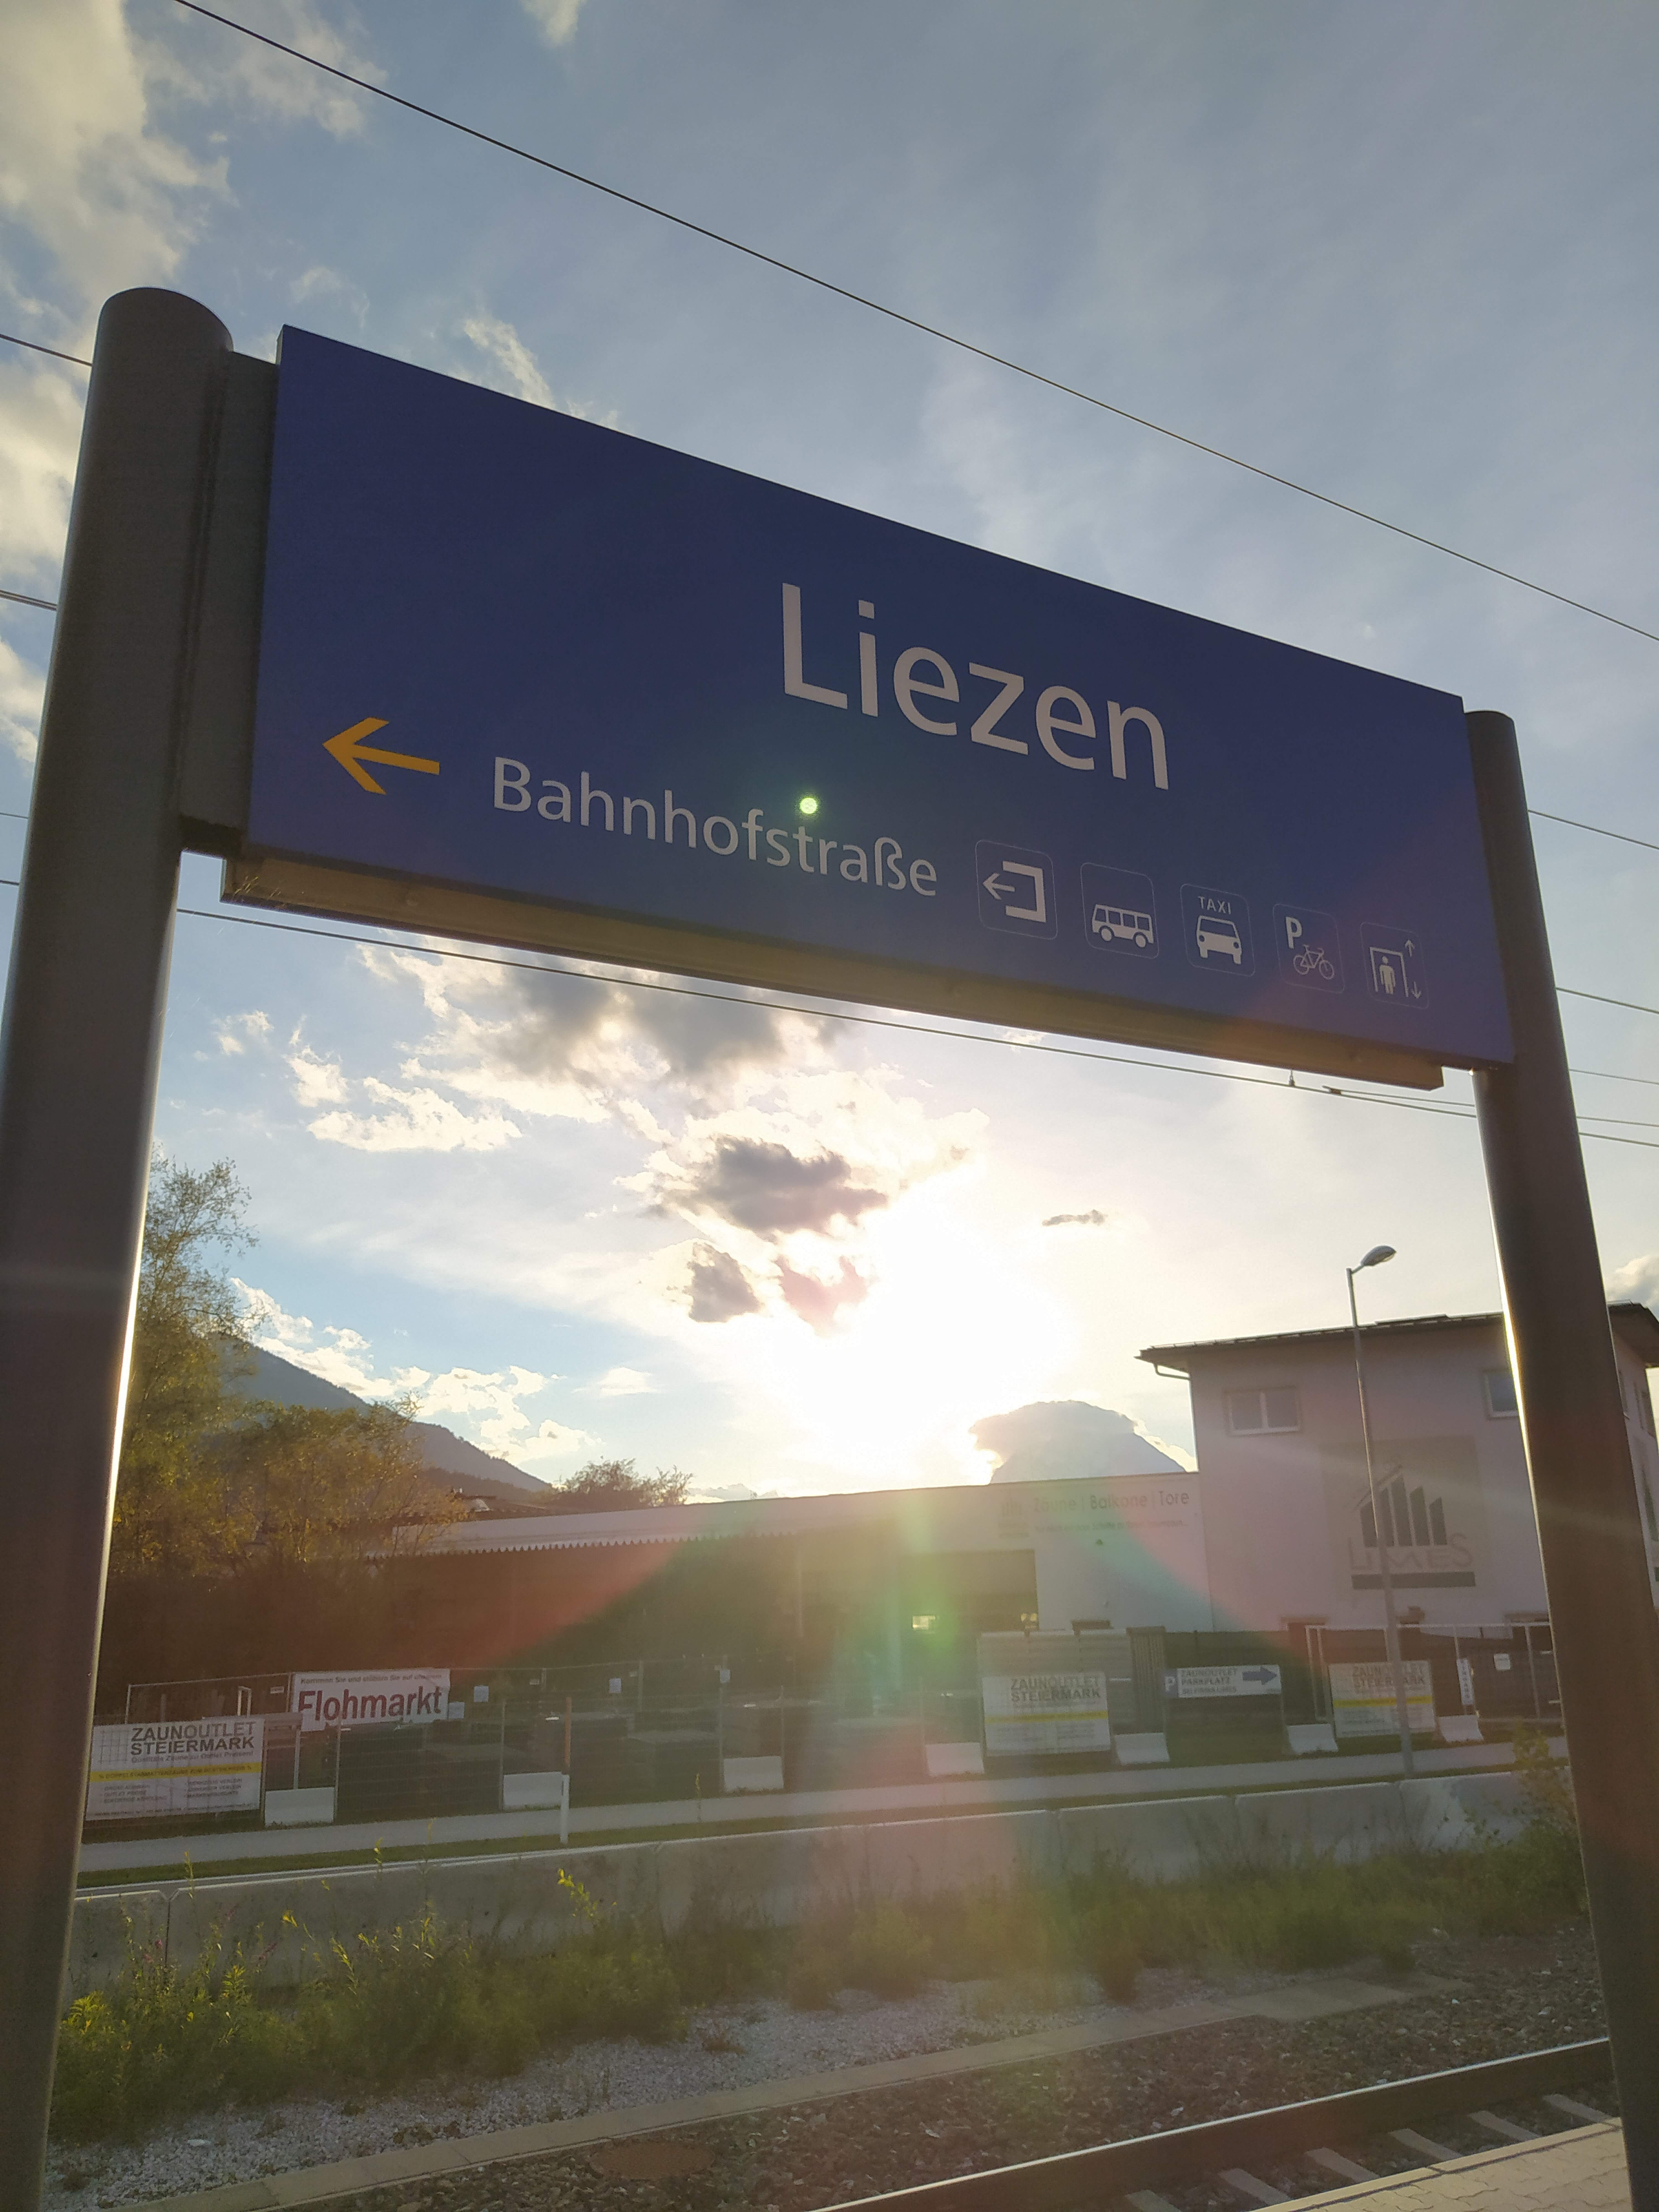 Train stations: Liezen, Stainach-Irdning, Selztal